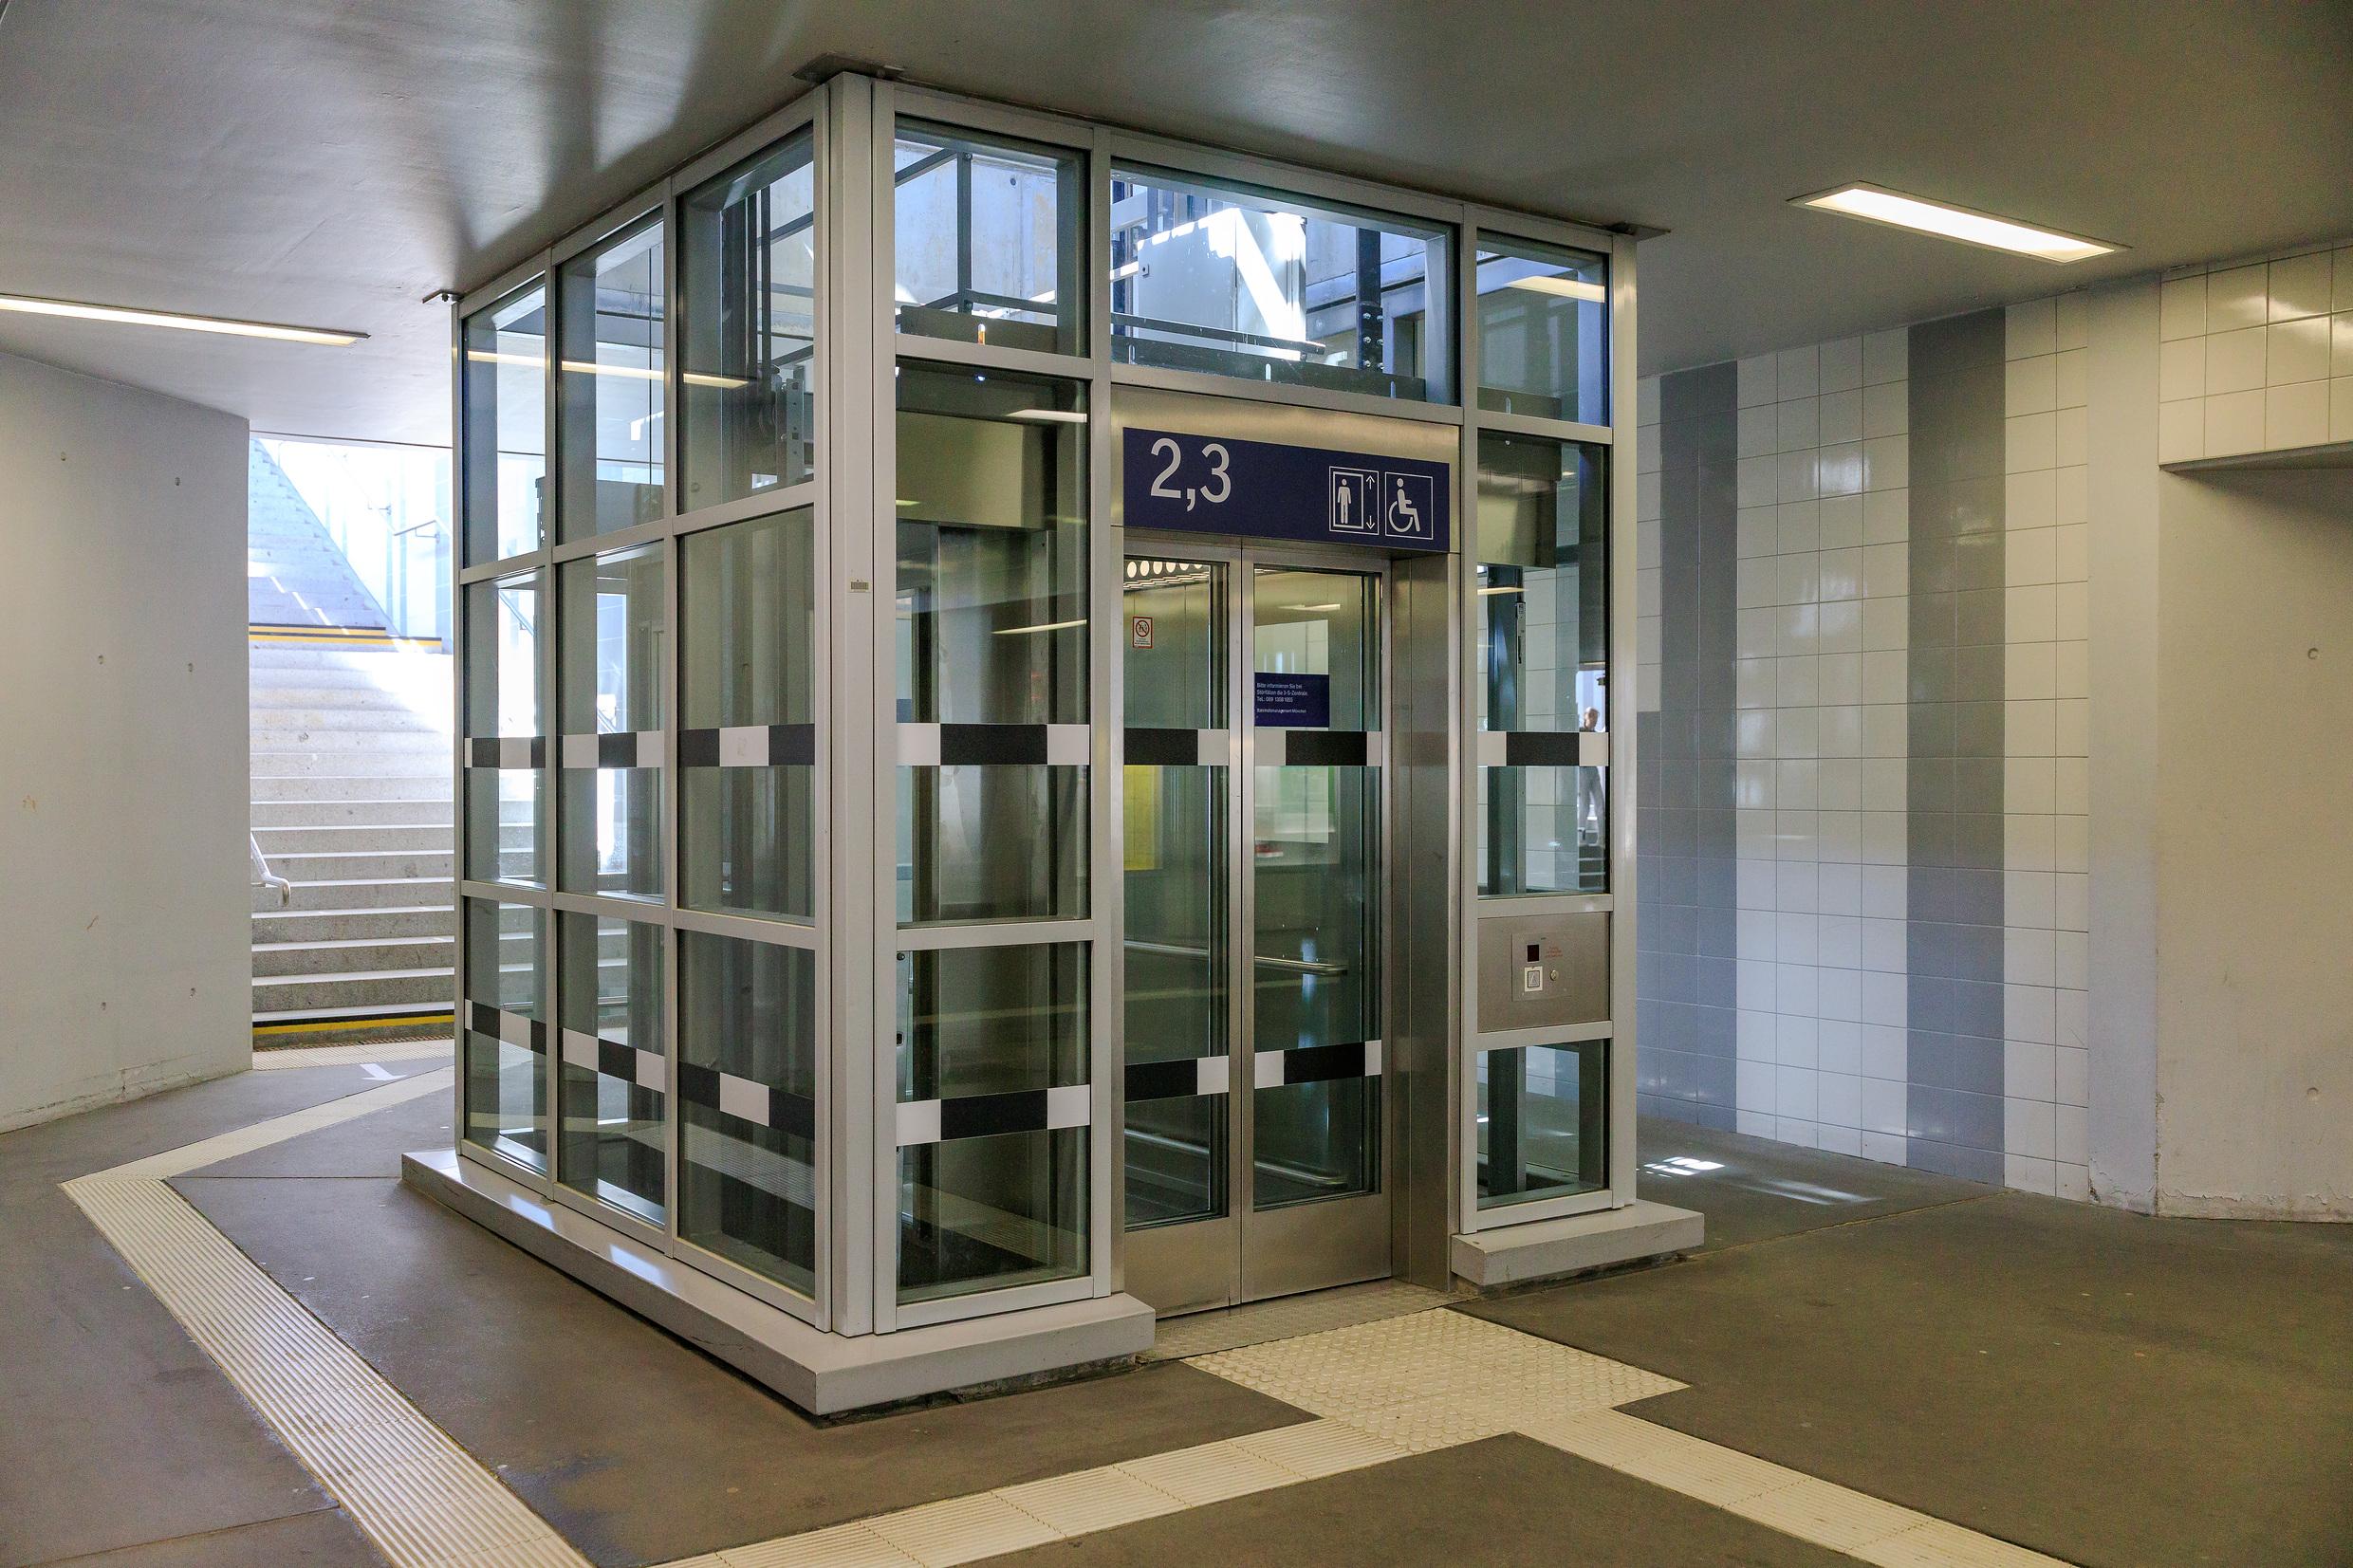 Ein Aufzug in der Personenunterführung eines Bahnhofs.